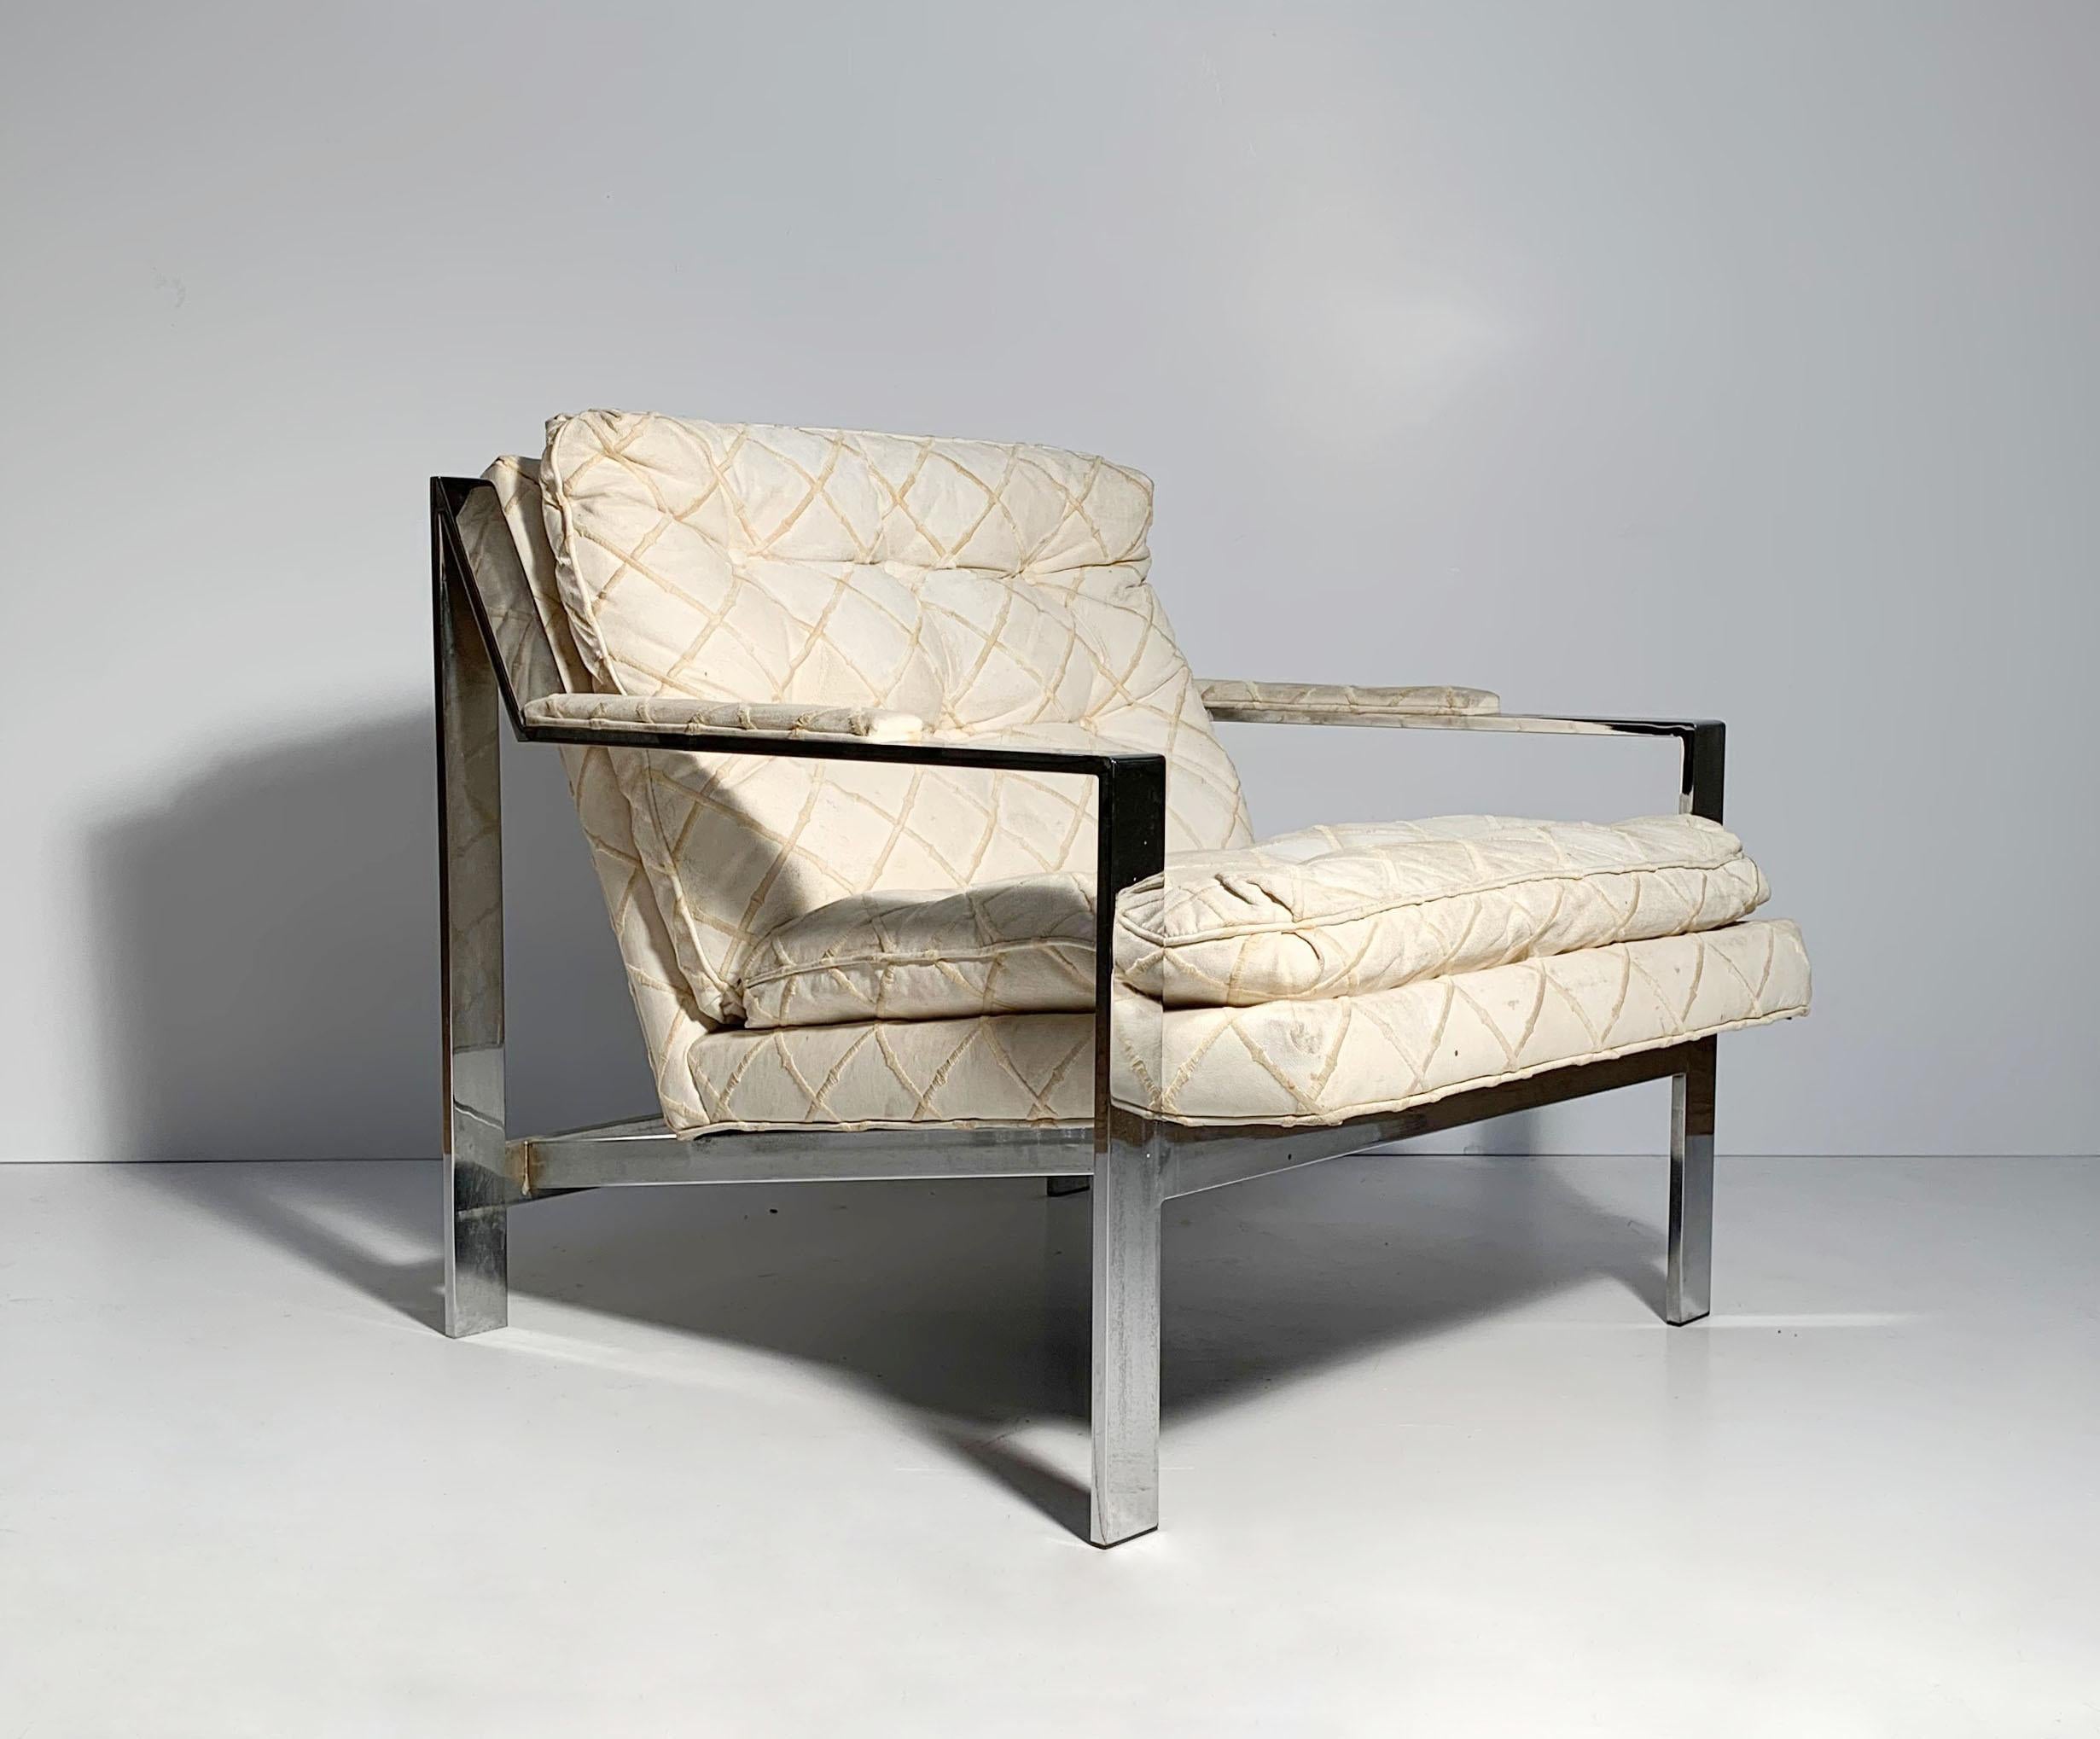 Vintage original chaise longue Cy Mann à la manière de Milo Baughman.
Tissu original qu'il sera souhaitable de retapisser. Montre l'usure et l'âge du tissu.